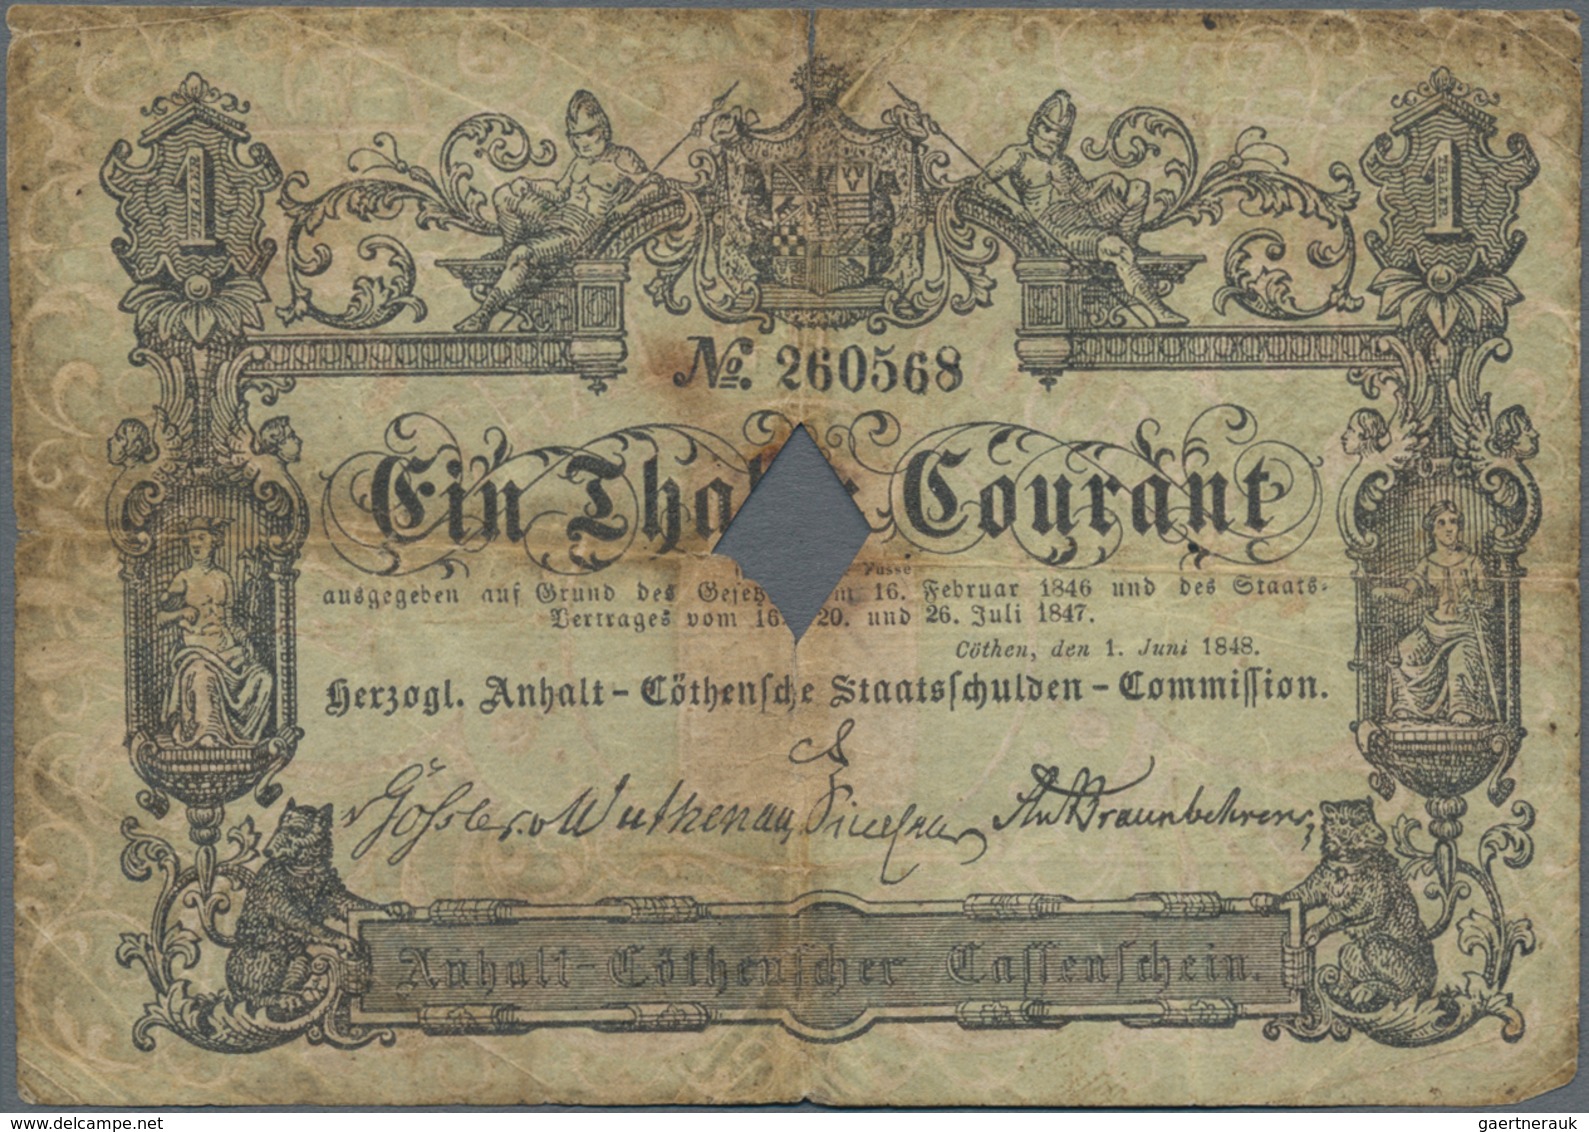 Deutschland - Altdeutsche Staaten: Herzogl. Anhalt-Cöthensche Staatsschulden-Commission 1 Thaler 184 - [ 1] …-1871 : Estados Alemanes